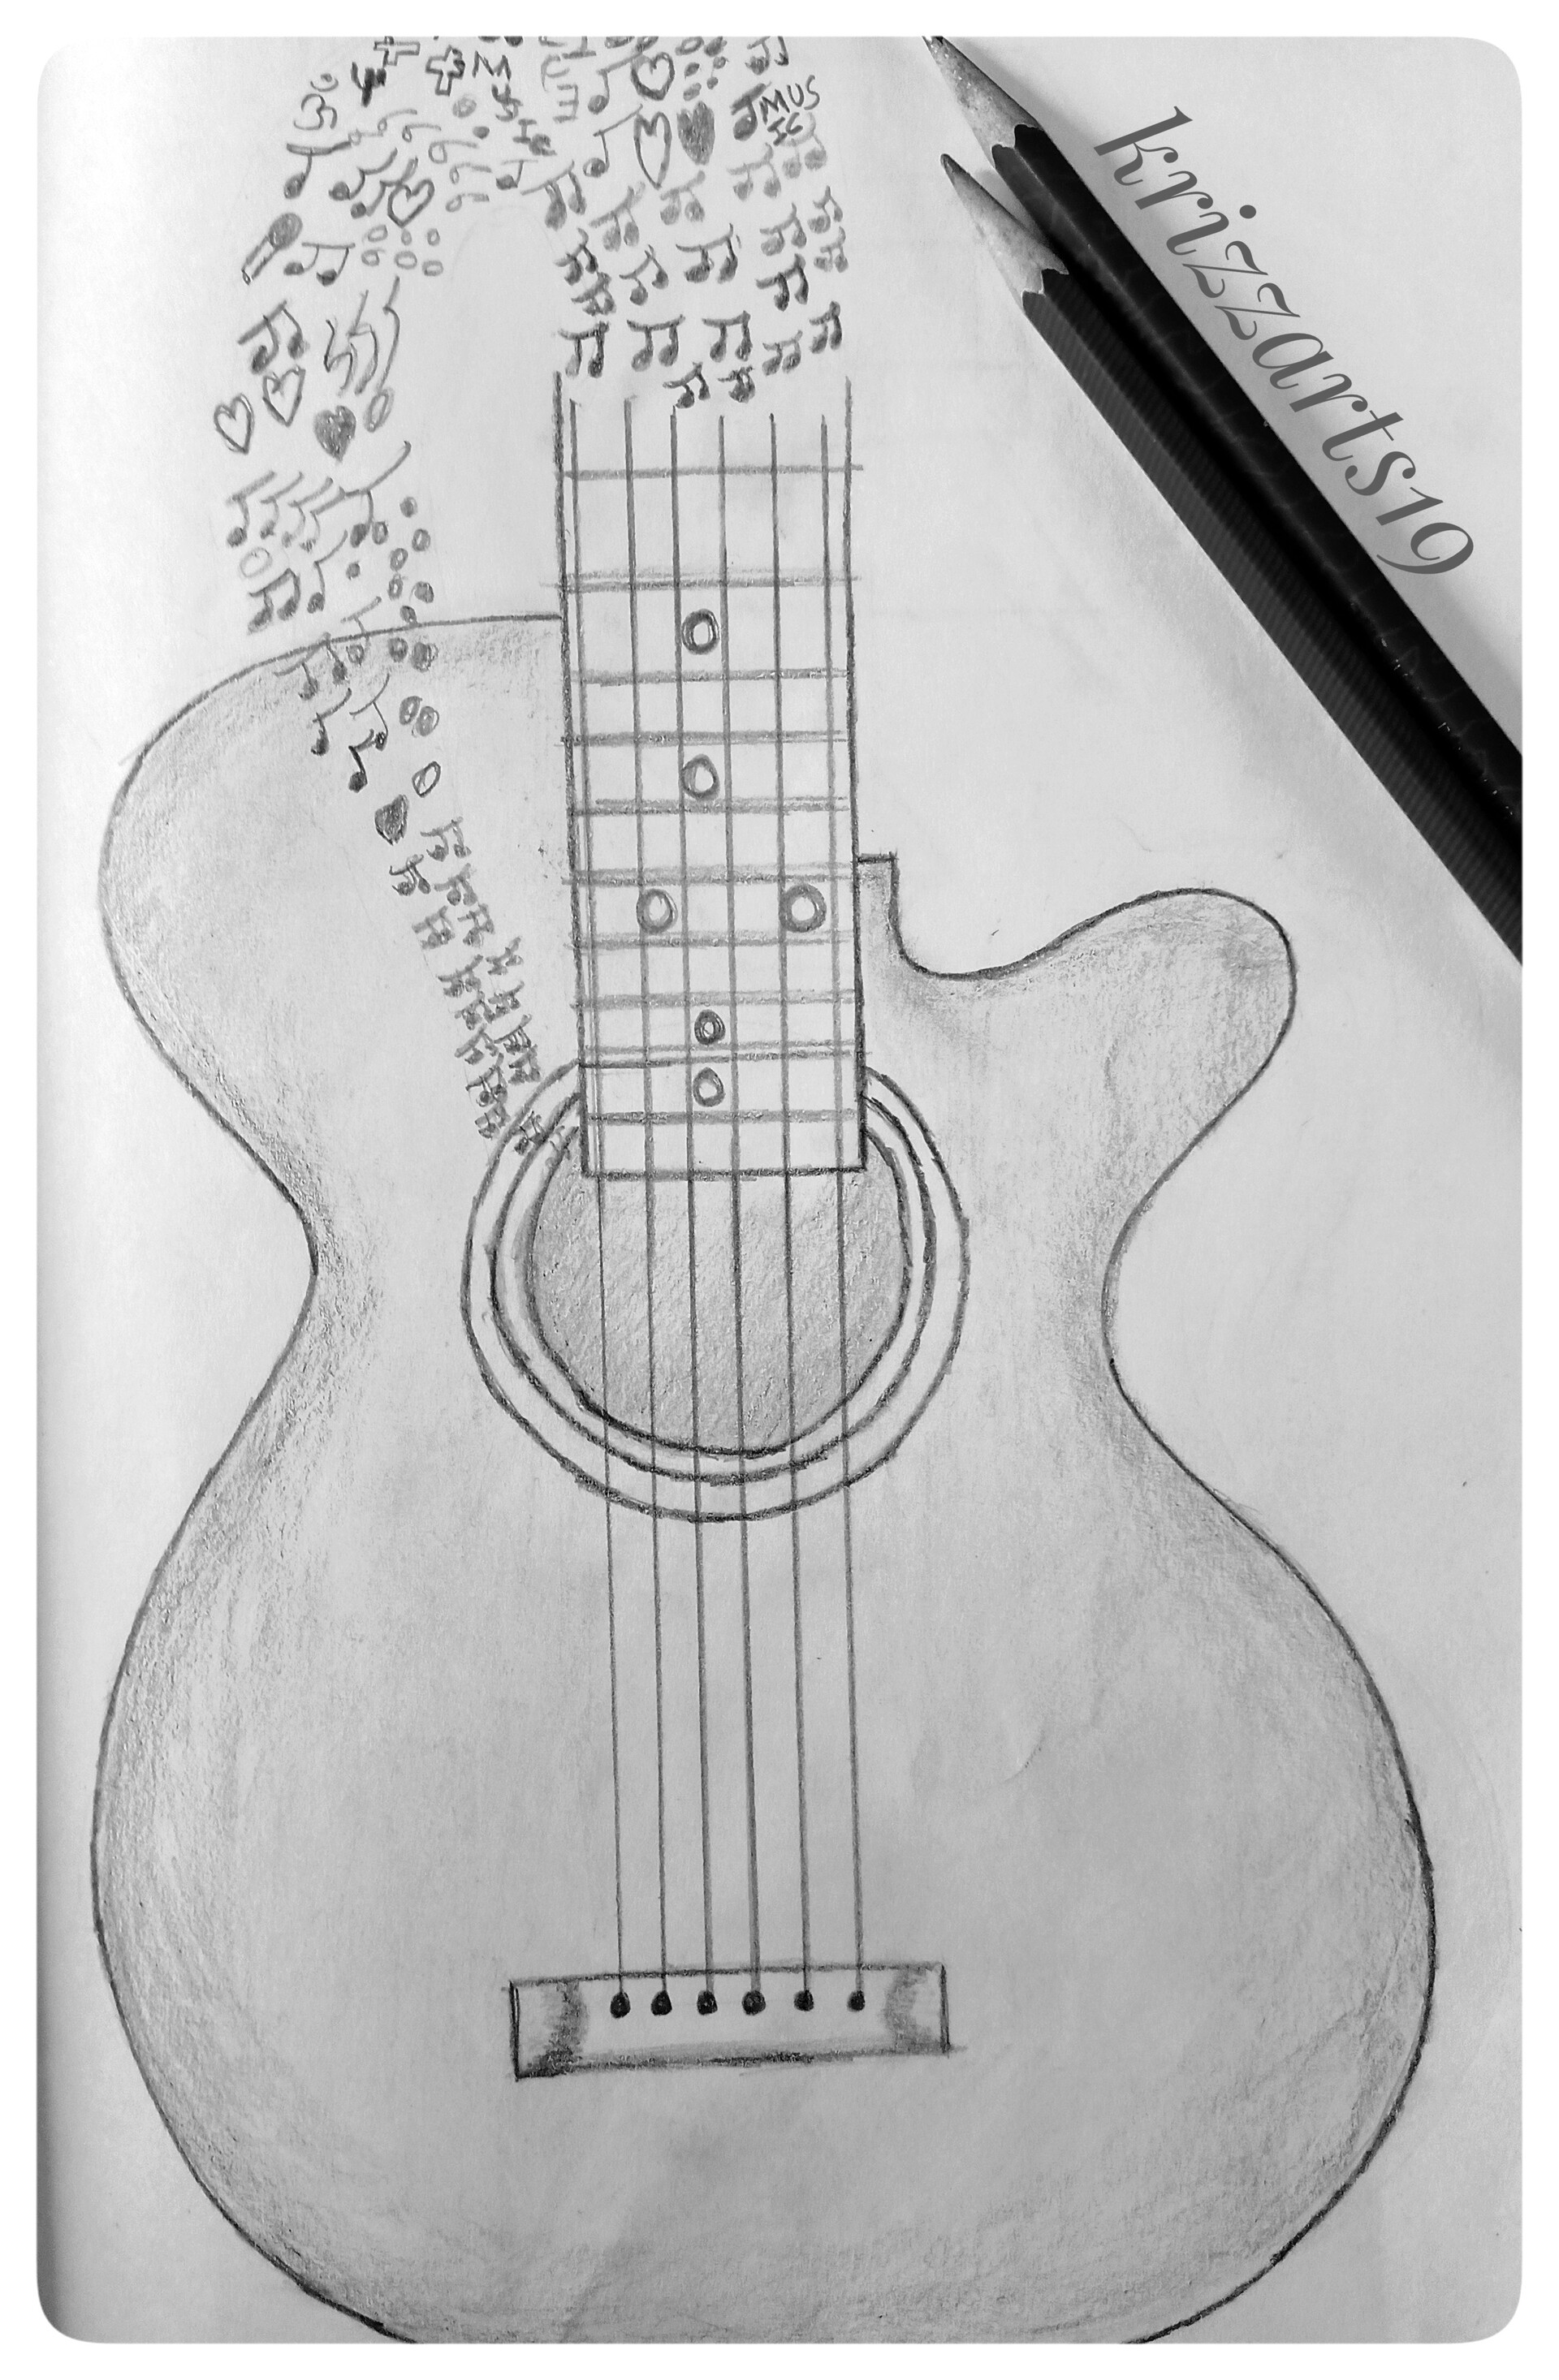 Guitar | Music drawings, Guitar drawing, Music art drawing